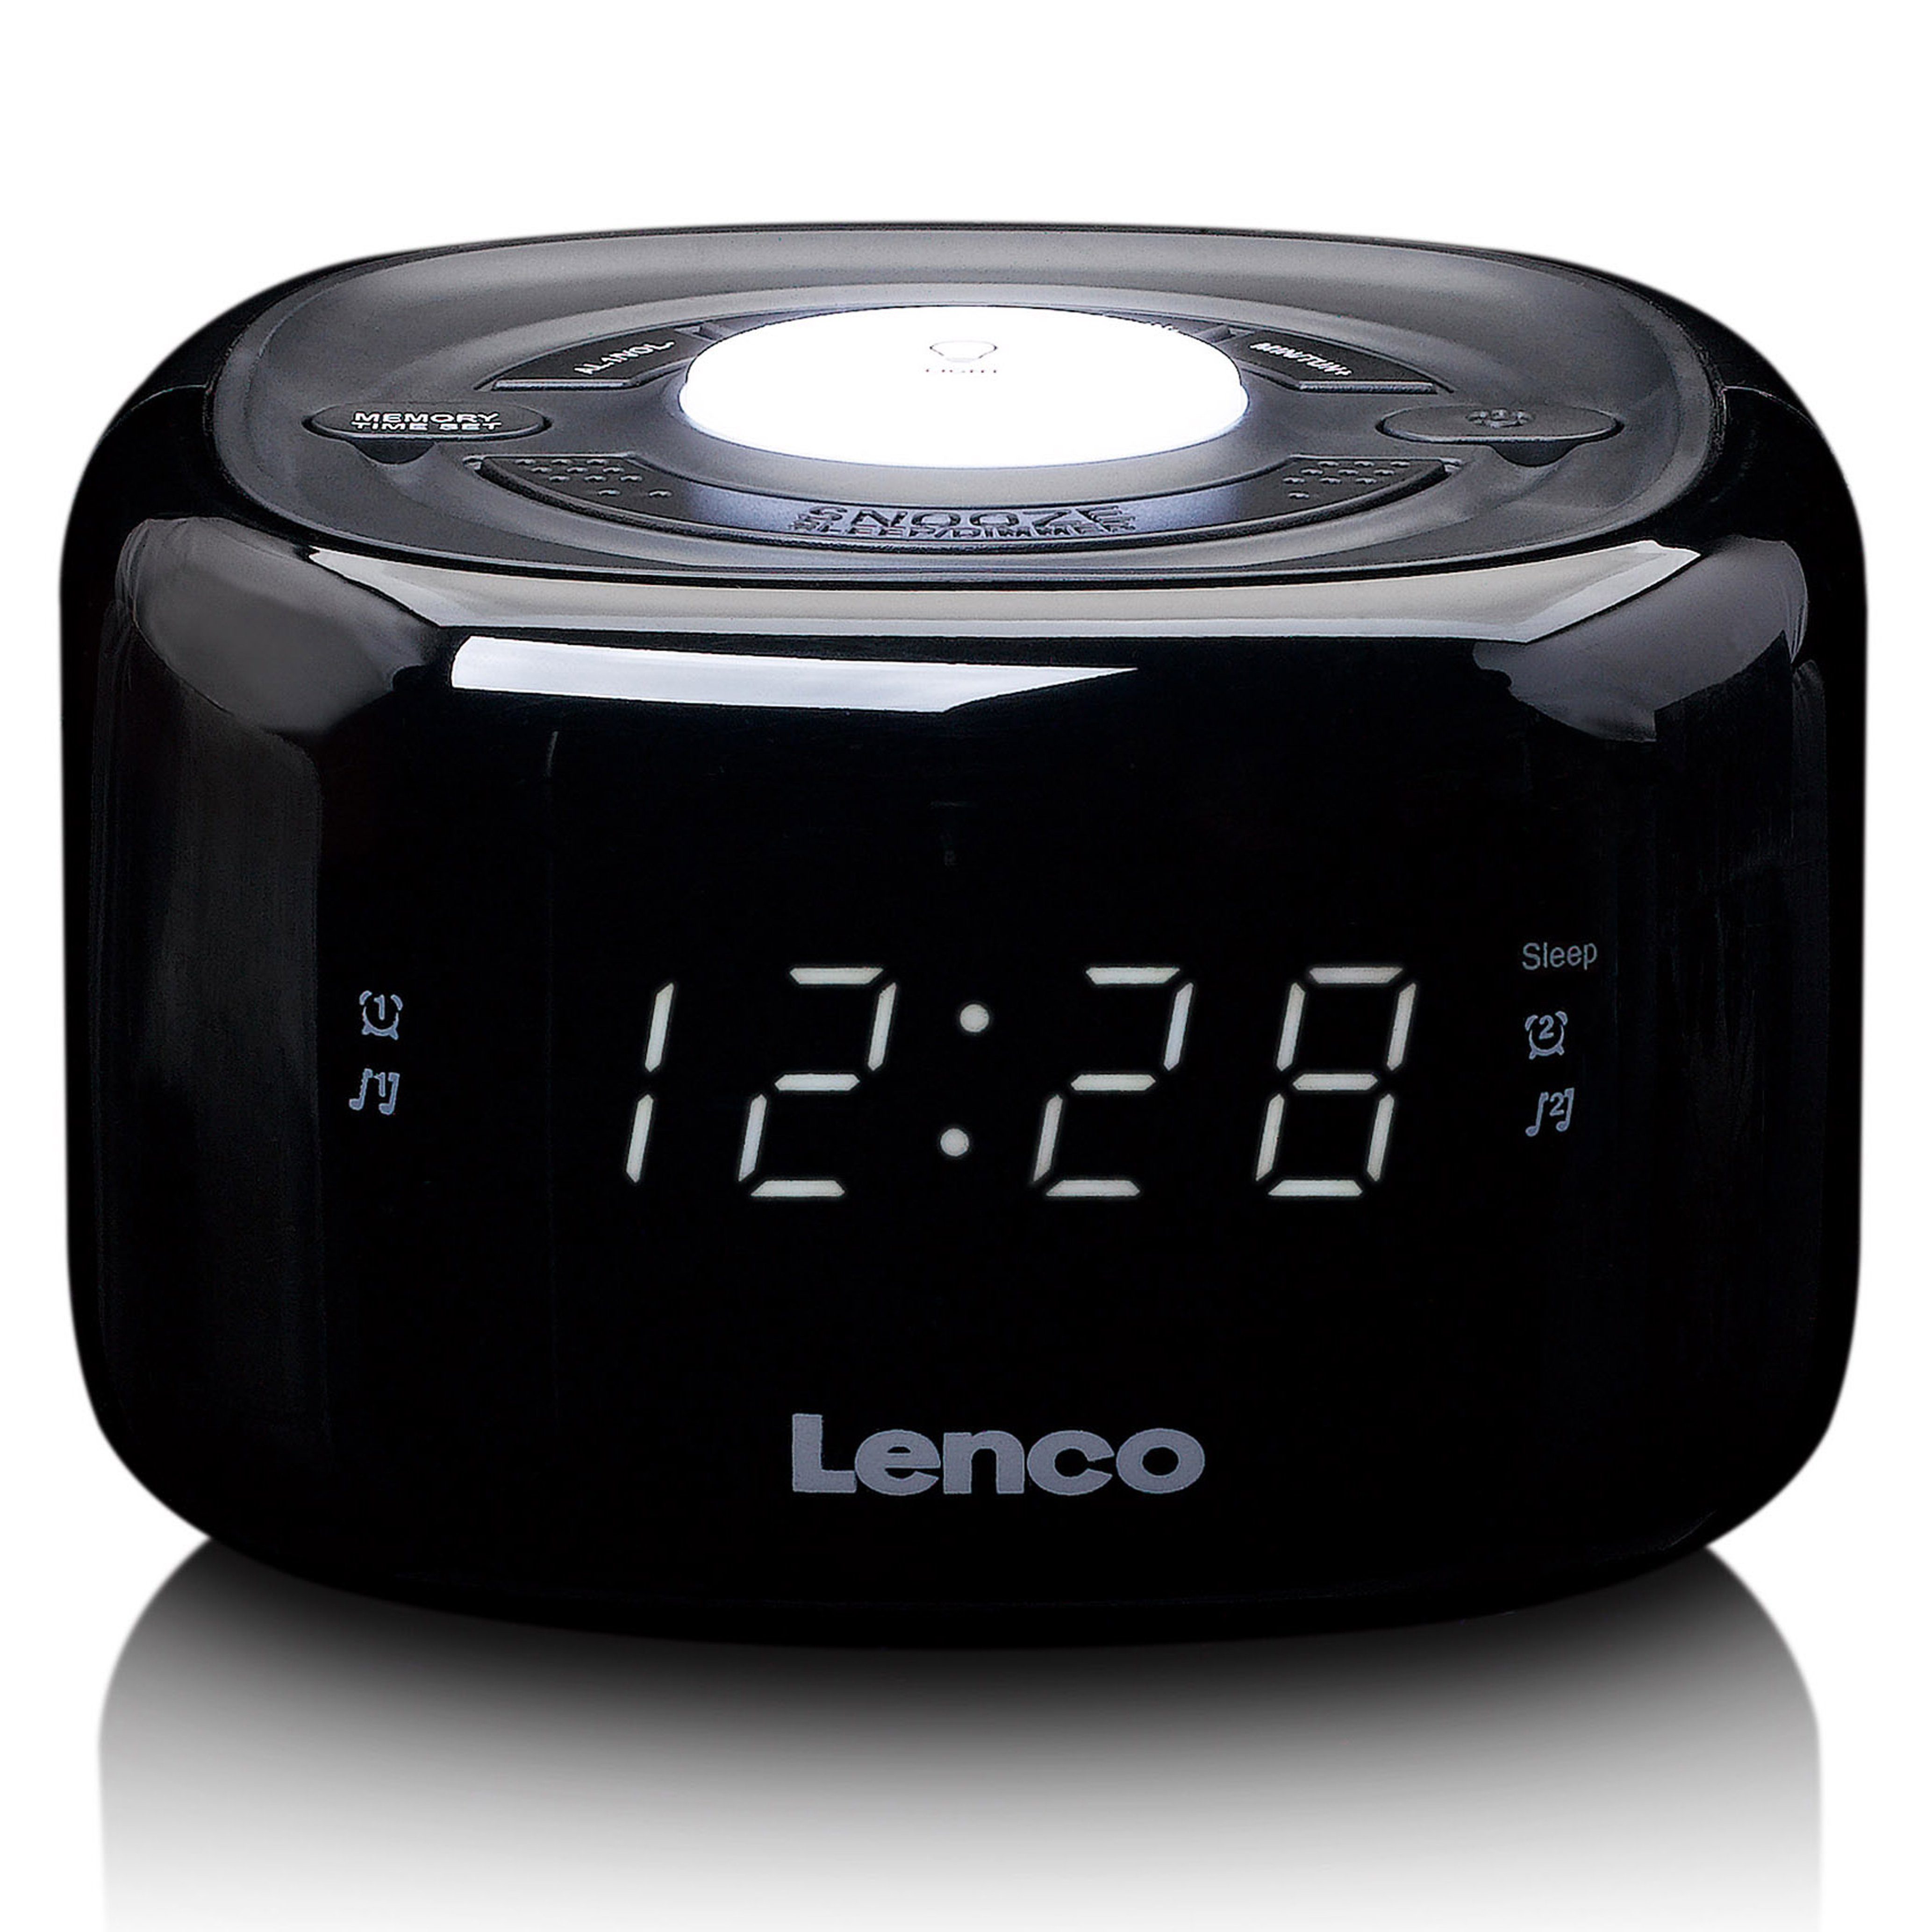 Lenco Radiowecker CR-12BK 10 Jahre Alarm, >85 20 für Batterielaufzeit, FM leichte Installation, Stationsspeicher dB